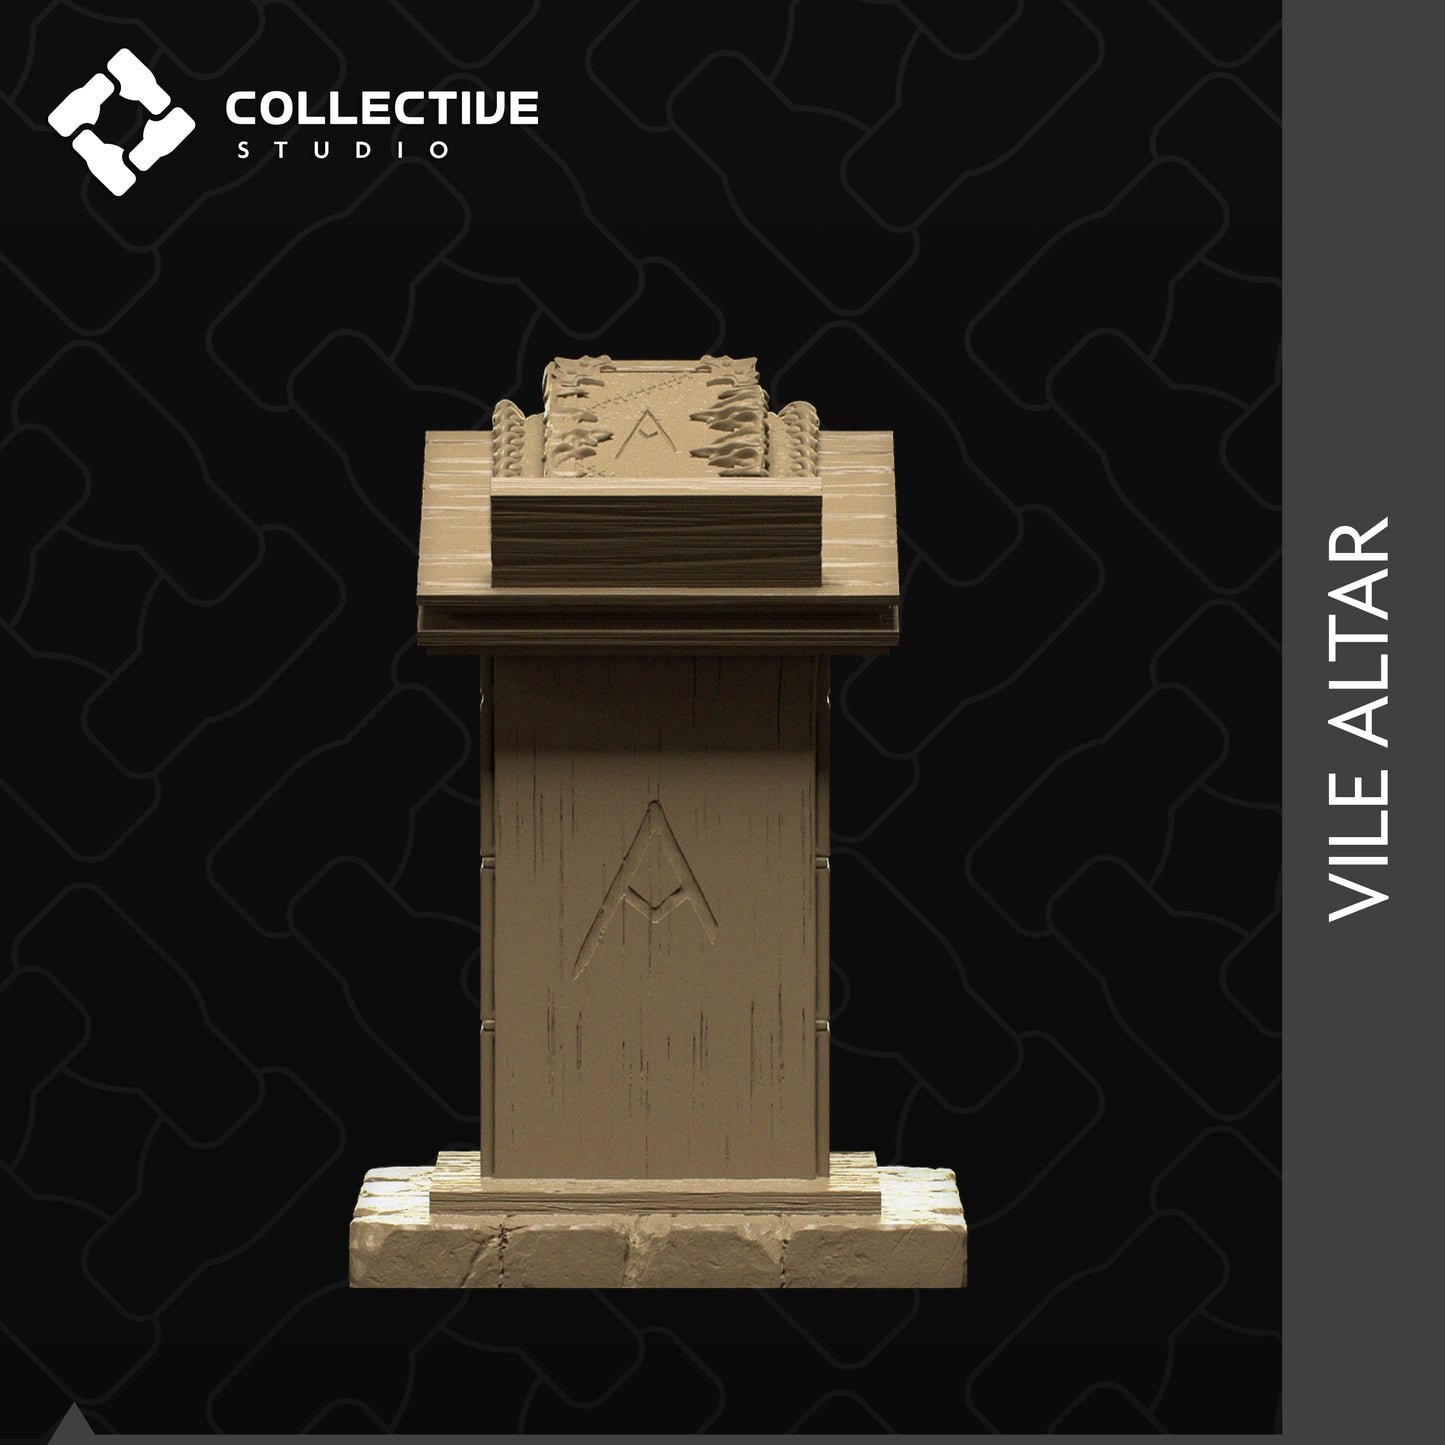 Ritual Einrichtung Tabletop Miniatur | Bank | Altar | Pentagramm | Banner | Dombogen | 32mm | D&D | Collective Studio